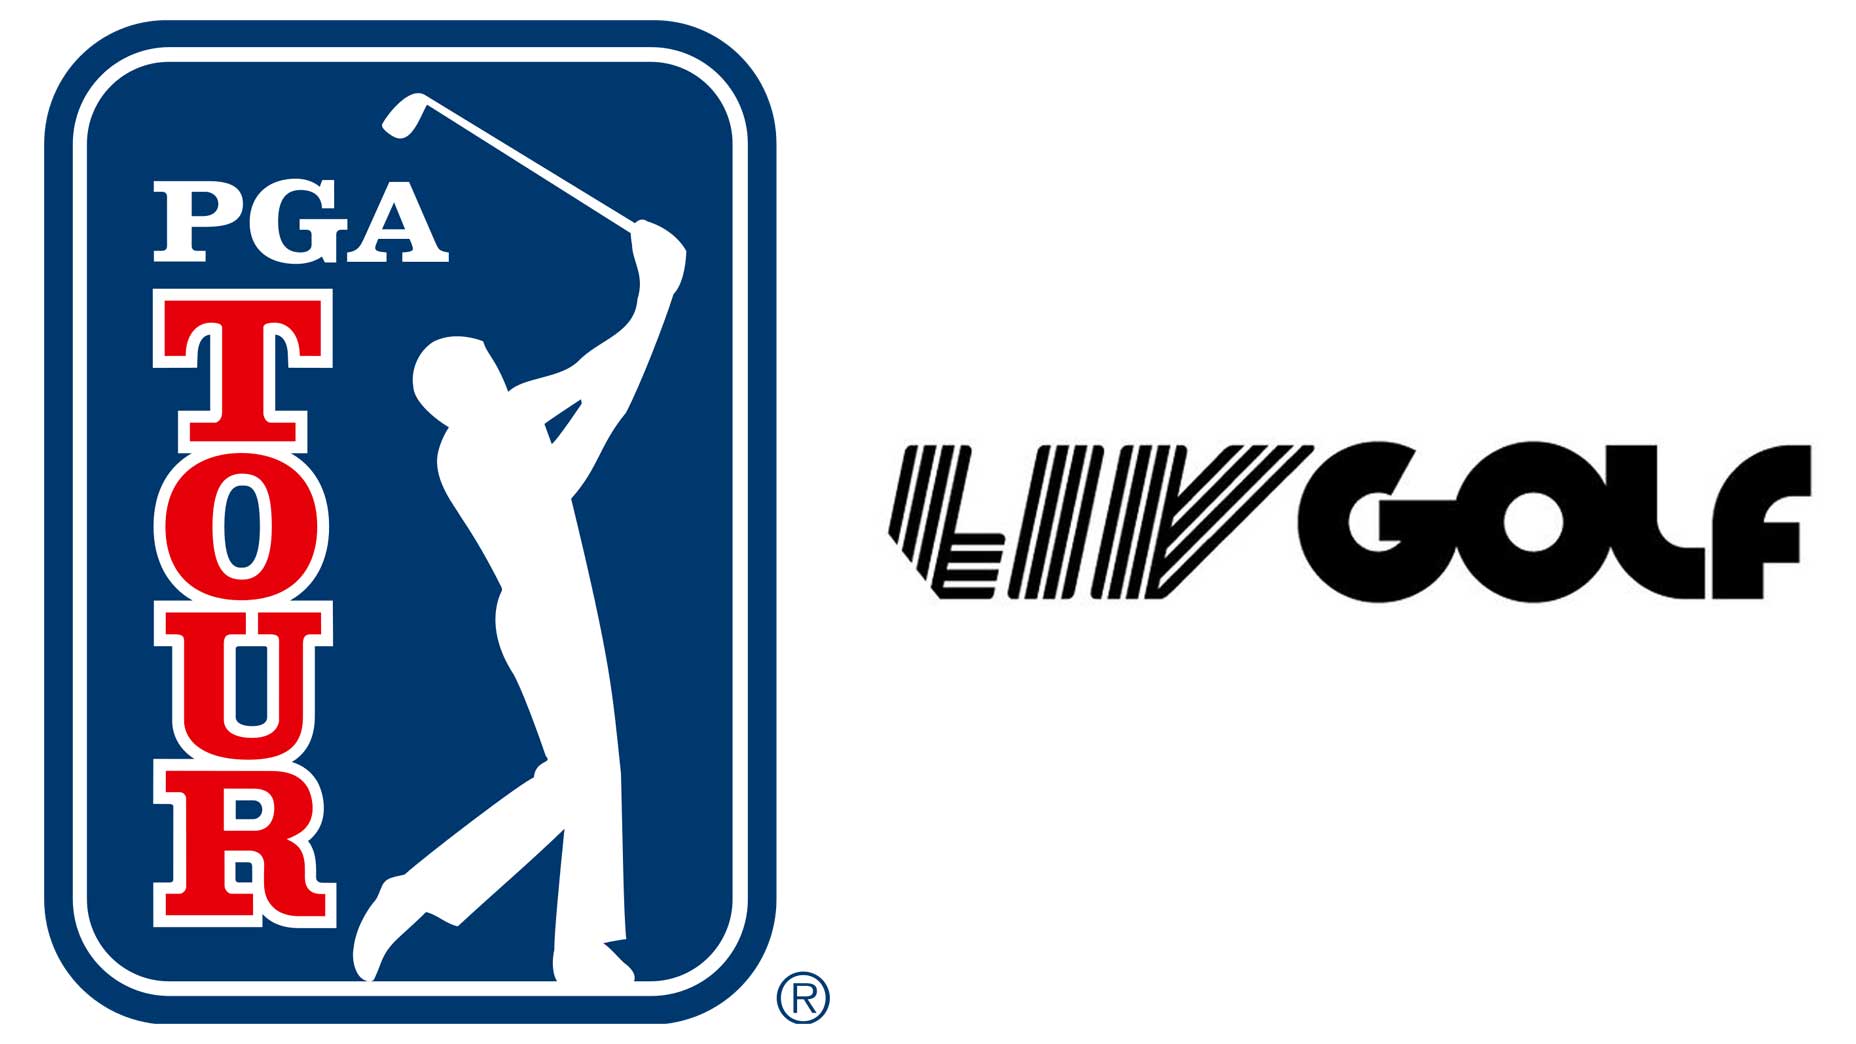 pga tour and liv golf to merge